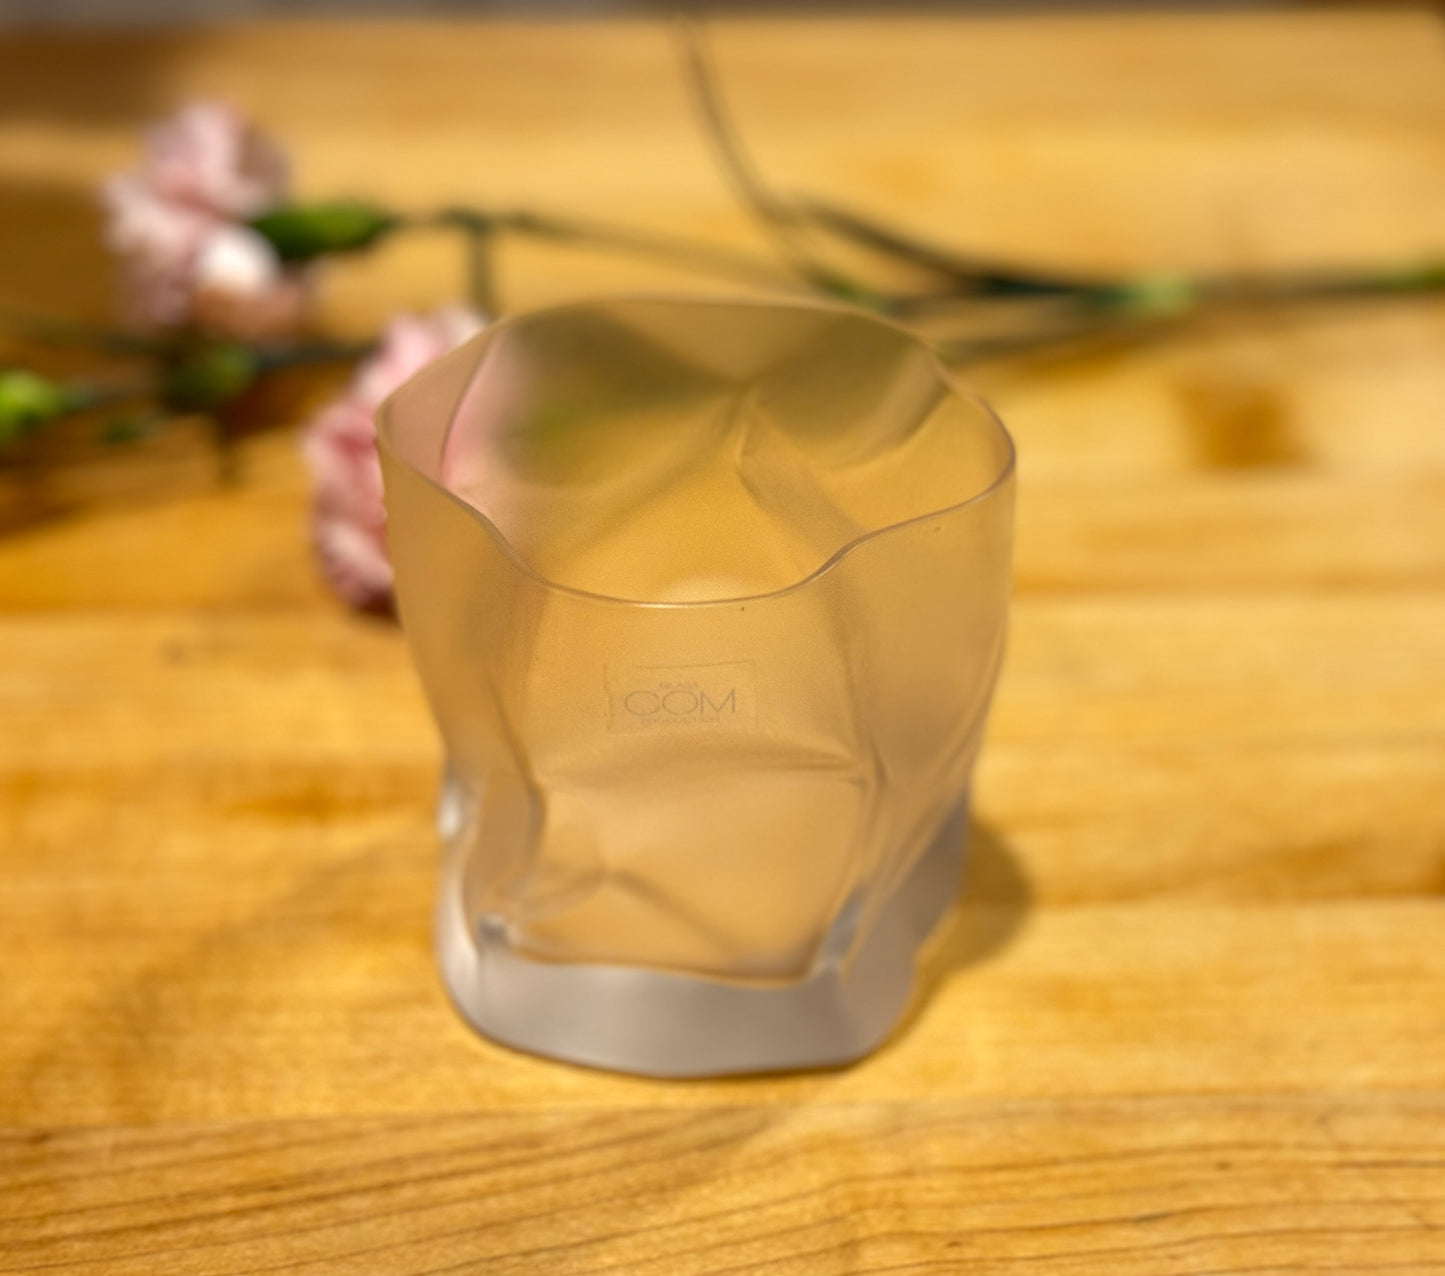 Crumple Old Fashioned Whiskey Glass by Komatsu Makoto